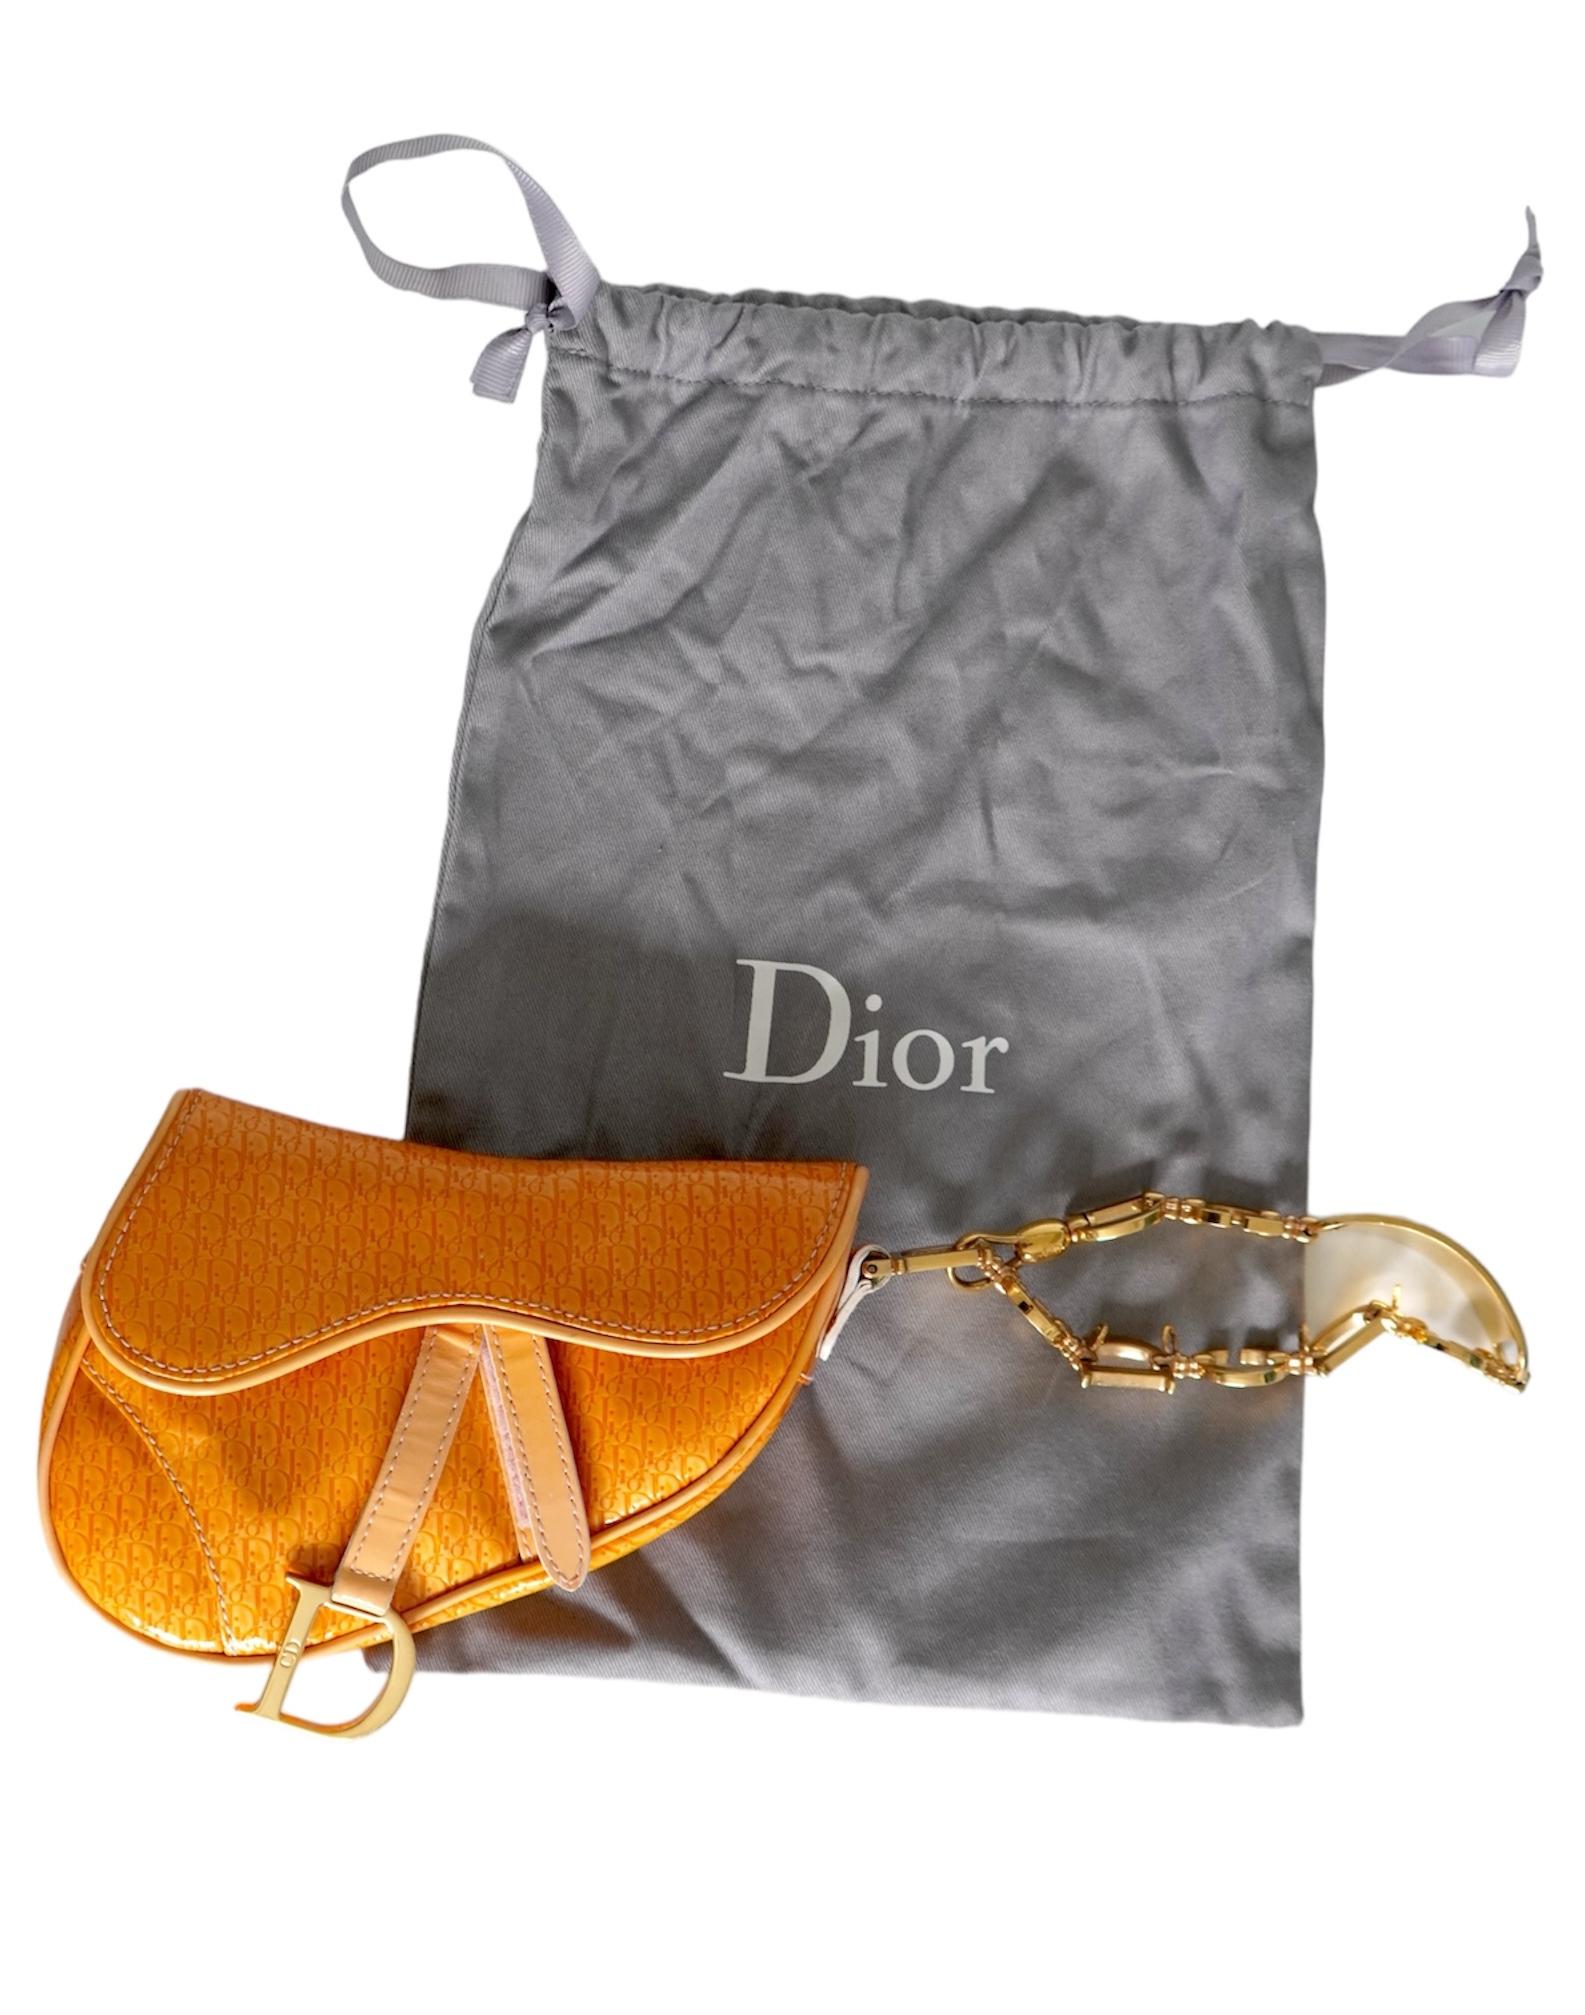 Dior Satteltasche Gelb & Orange Monogram Lackleder 
Klettverschluss
Goldfarbene Hardware
Einzelnes Fach
Innentasche
Christian Dior Logoanhänger aus geprägtem Leder
Verkauft mit Staubbeutel